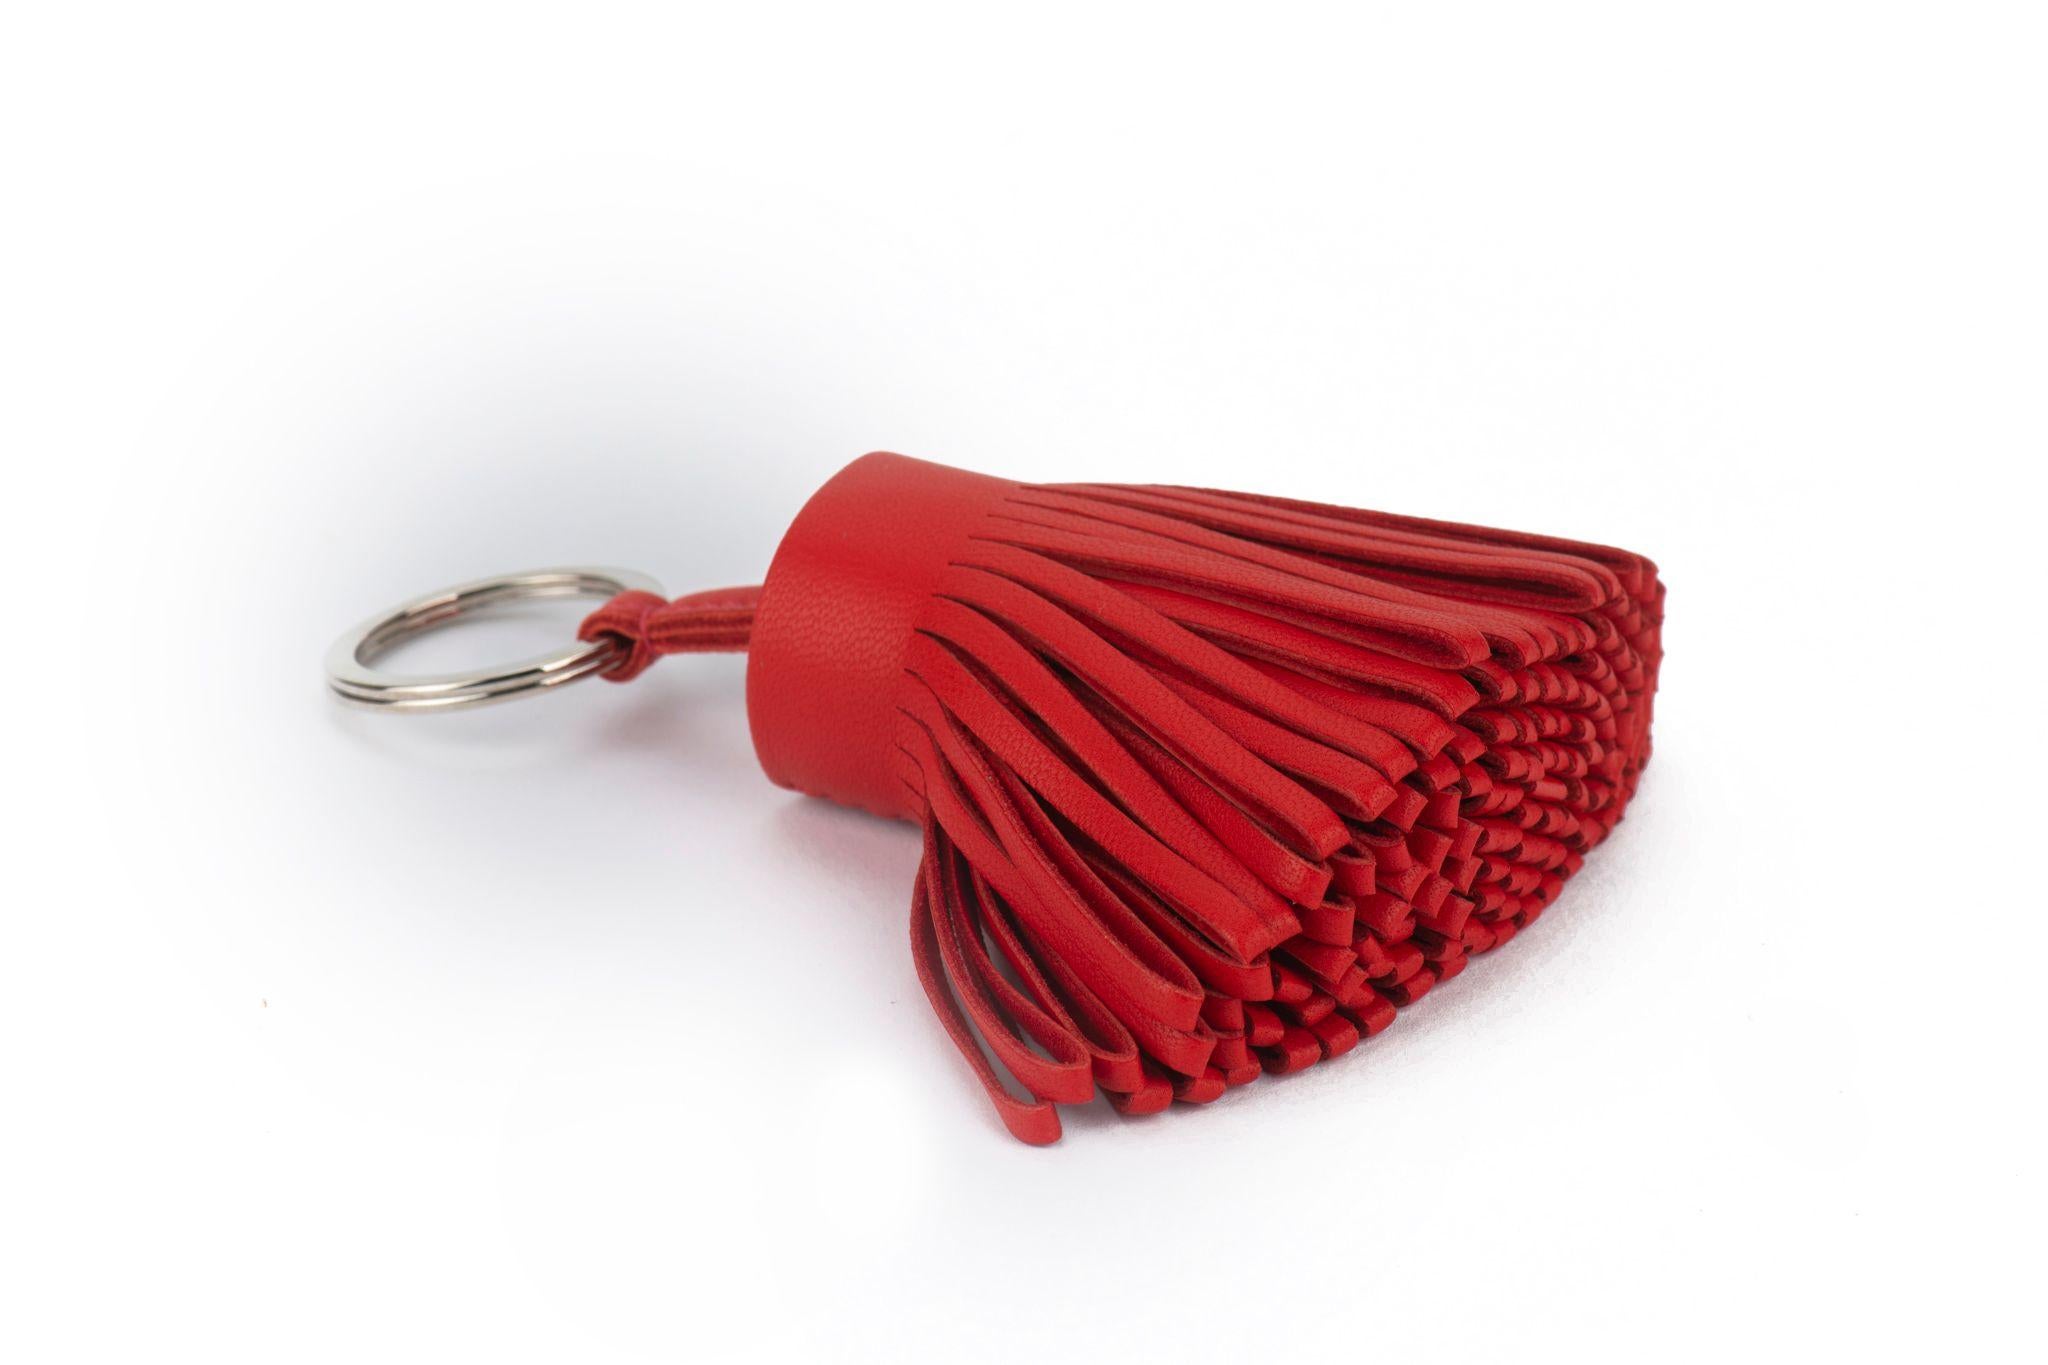 Hermès Carmen Schlüsselanhänger aus rotem Lammleder mit Quaste. Brandneu mit Originalverpackung in unbenutztem Zustand.